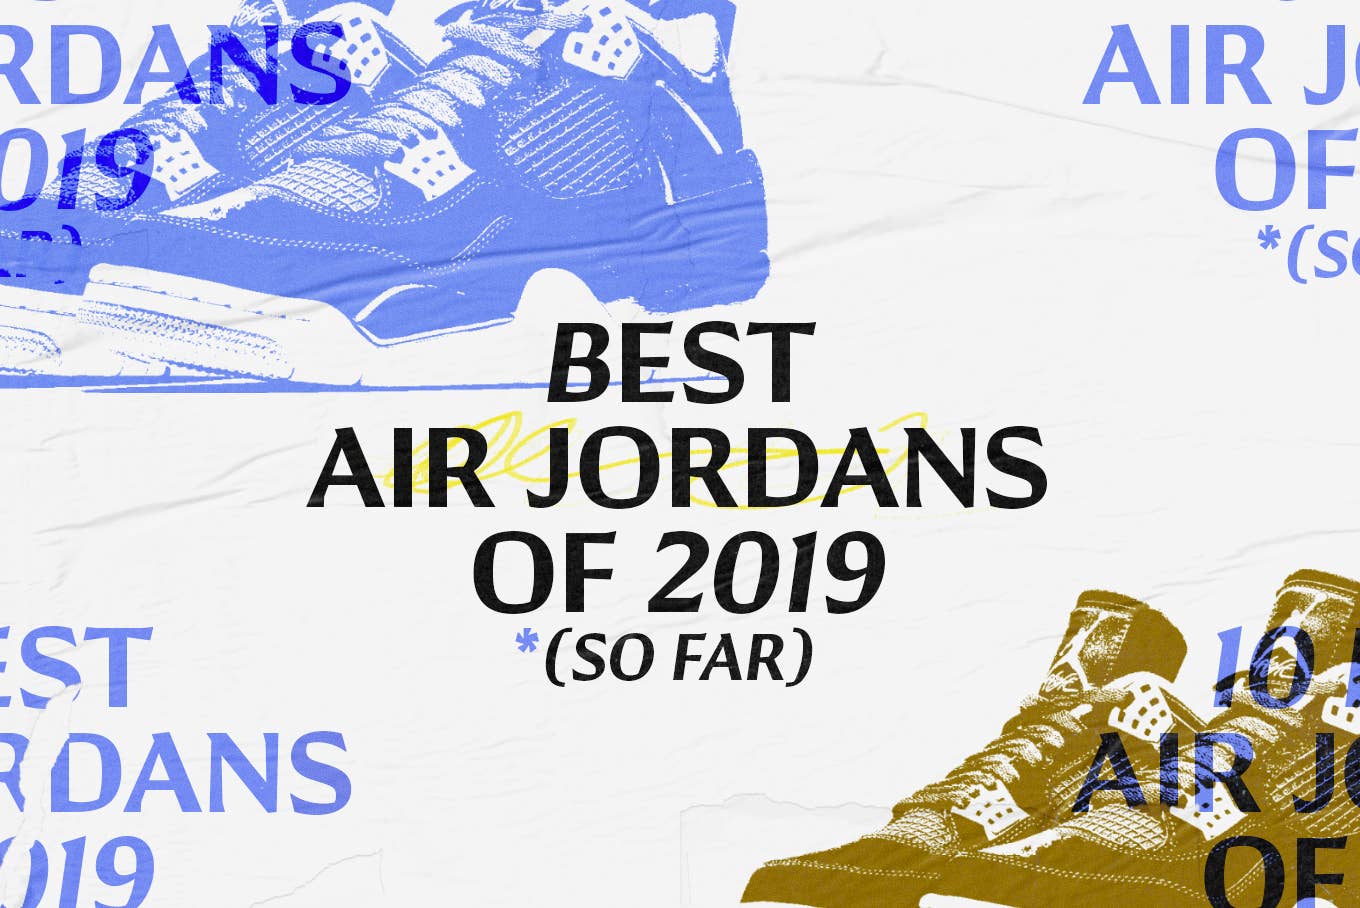 Best Air Jordans 2019 So Far